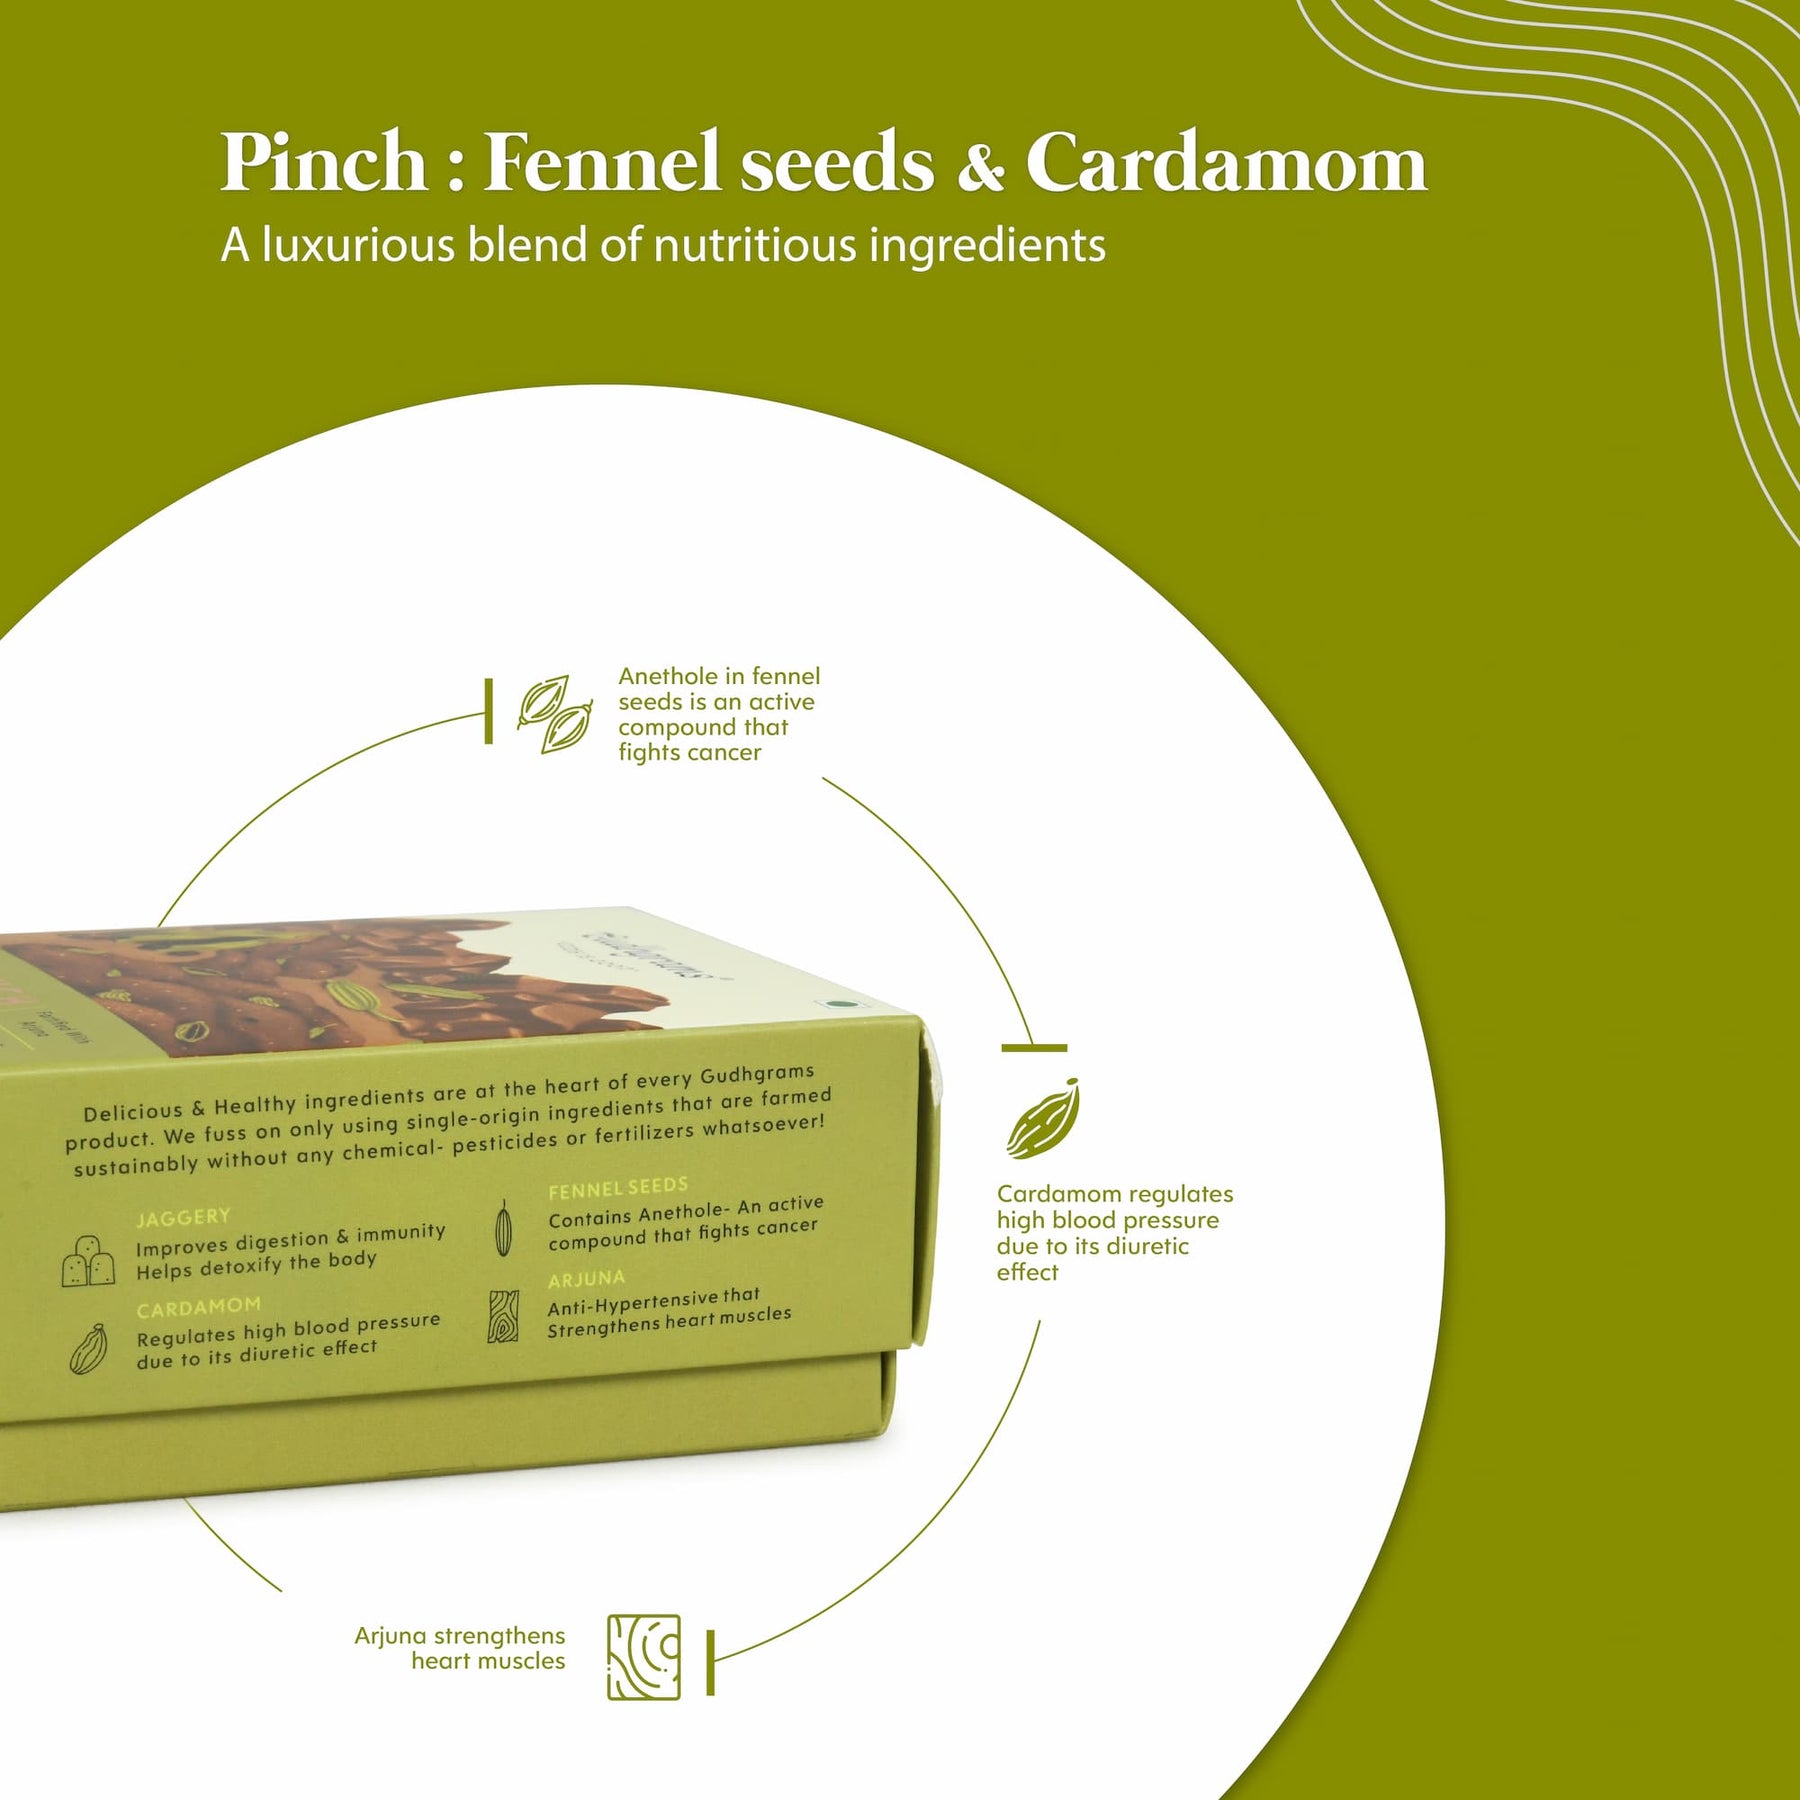 Pinch - Fennel seeds & Cardamom